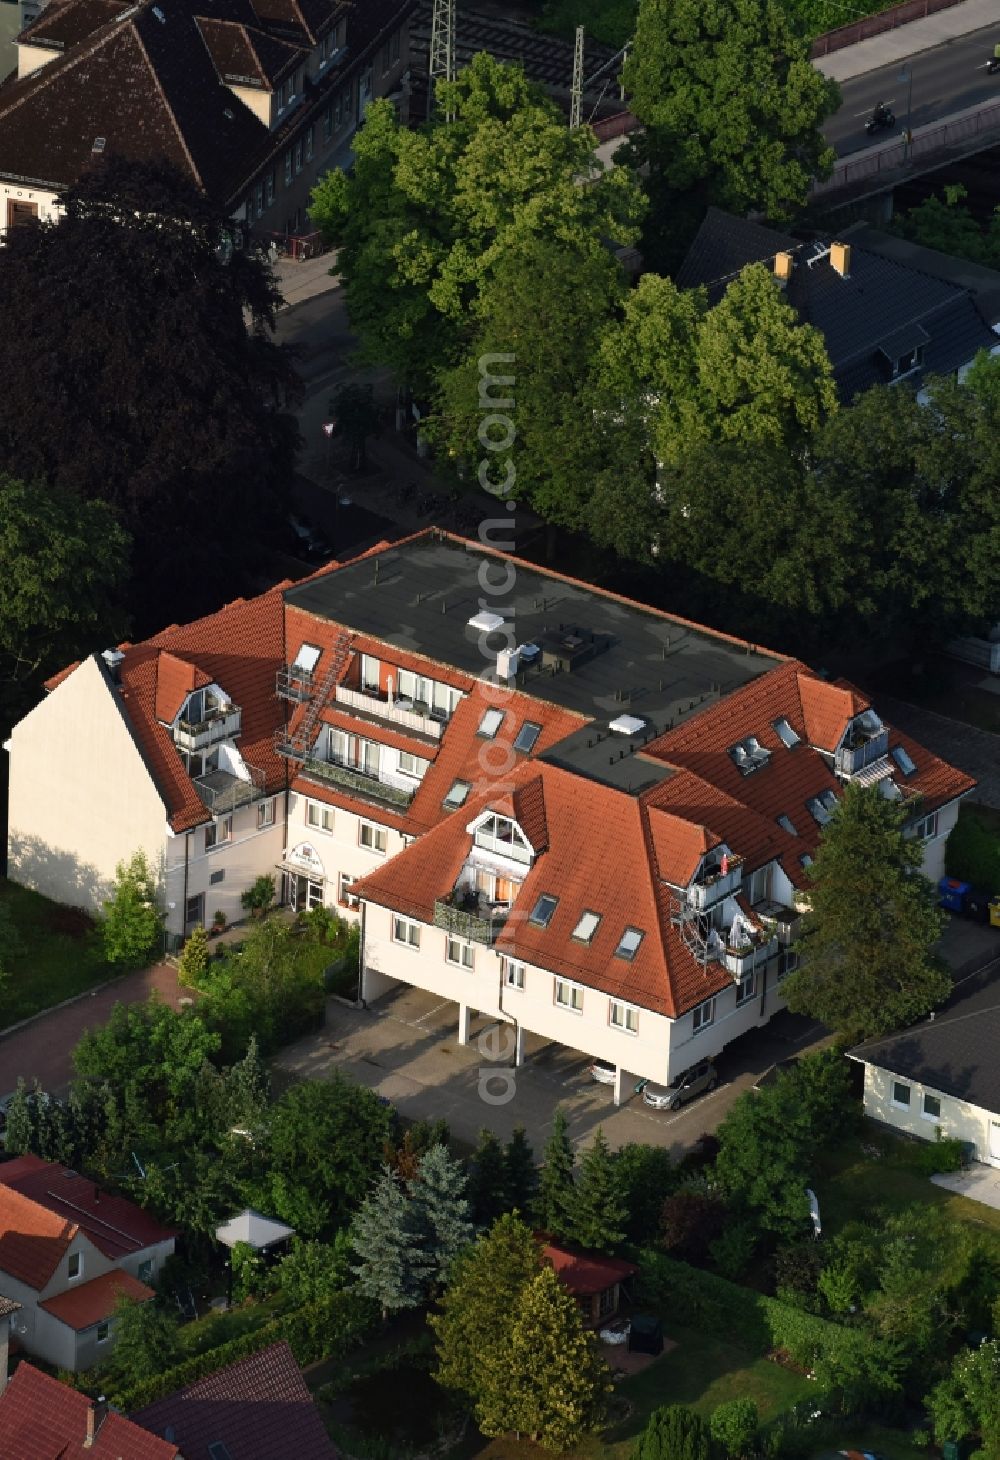 Aerial photograph Birkenwerder - Complex of the hotel building ANDERSEN HOTEL Clara-Zetkin-Strasse in Birkenwerder in the state Brandenburg